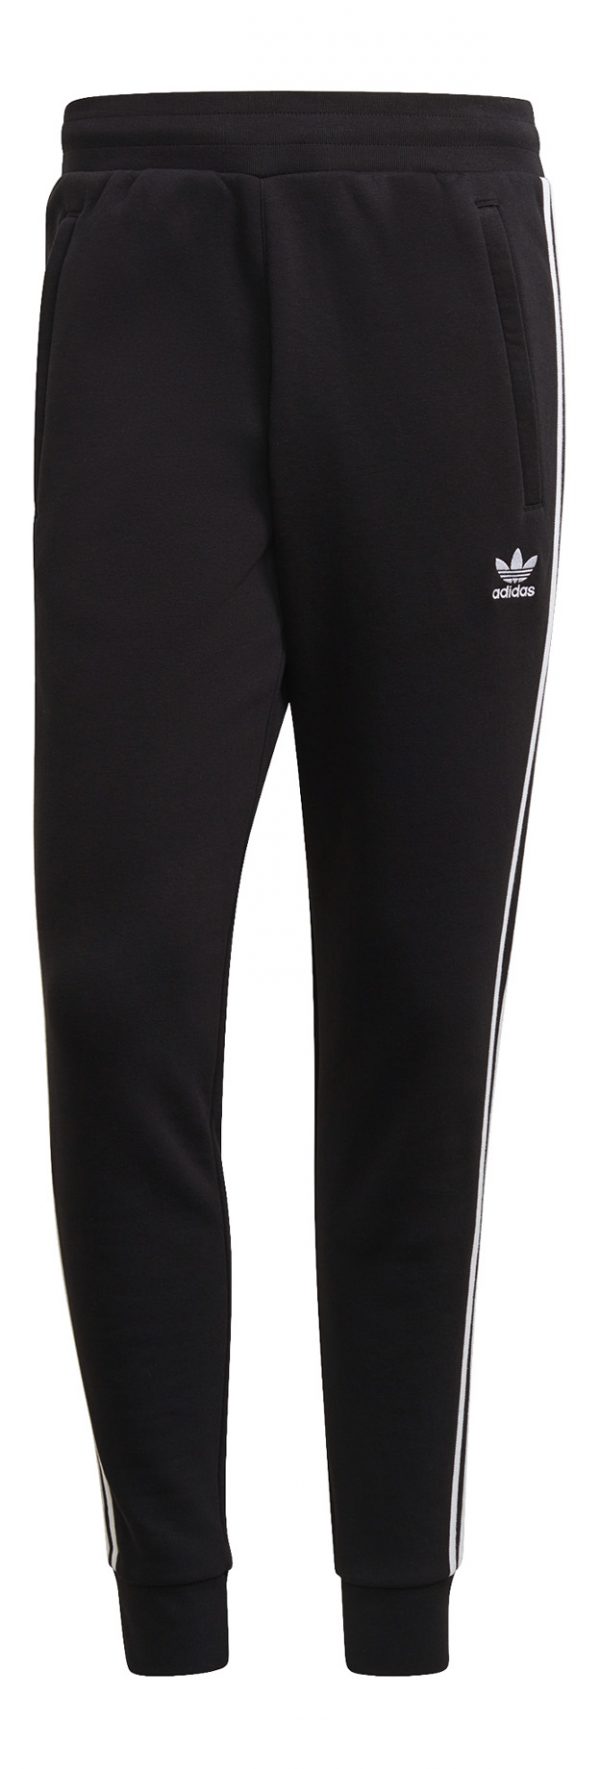 Spodnie adidas 3-stripes GN3458 Rozmiar S (173cm)